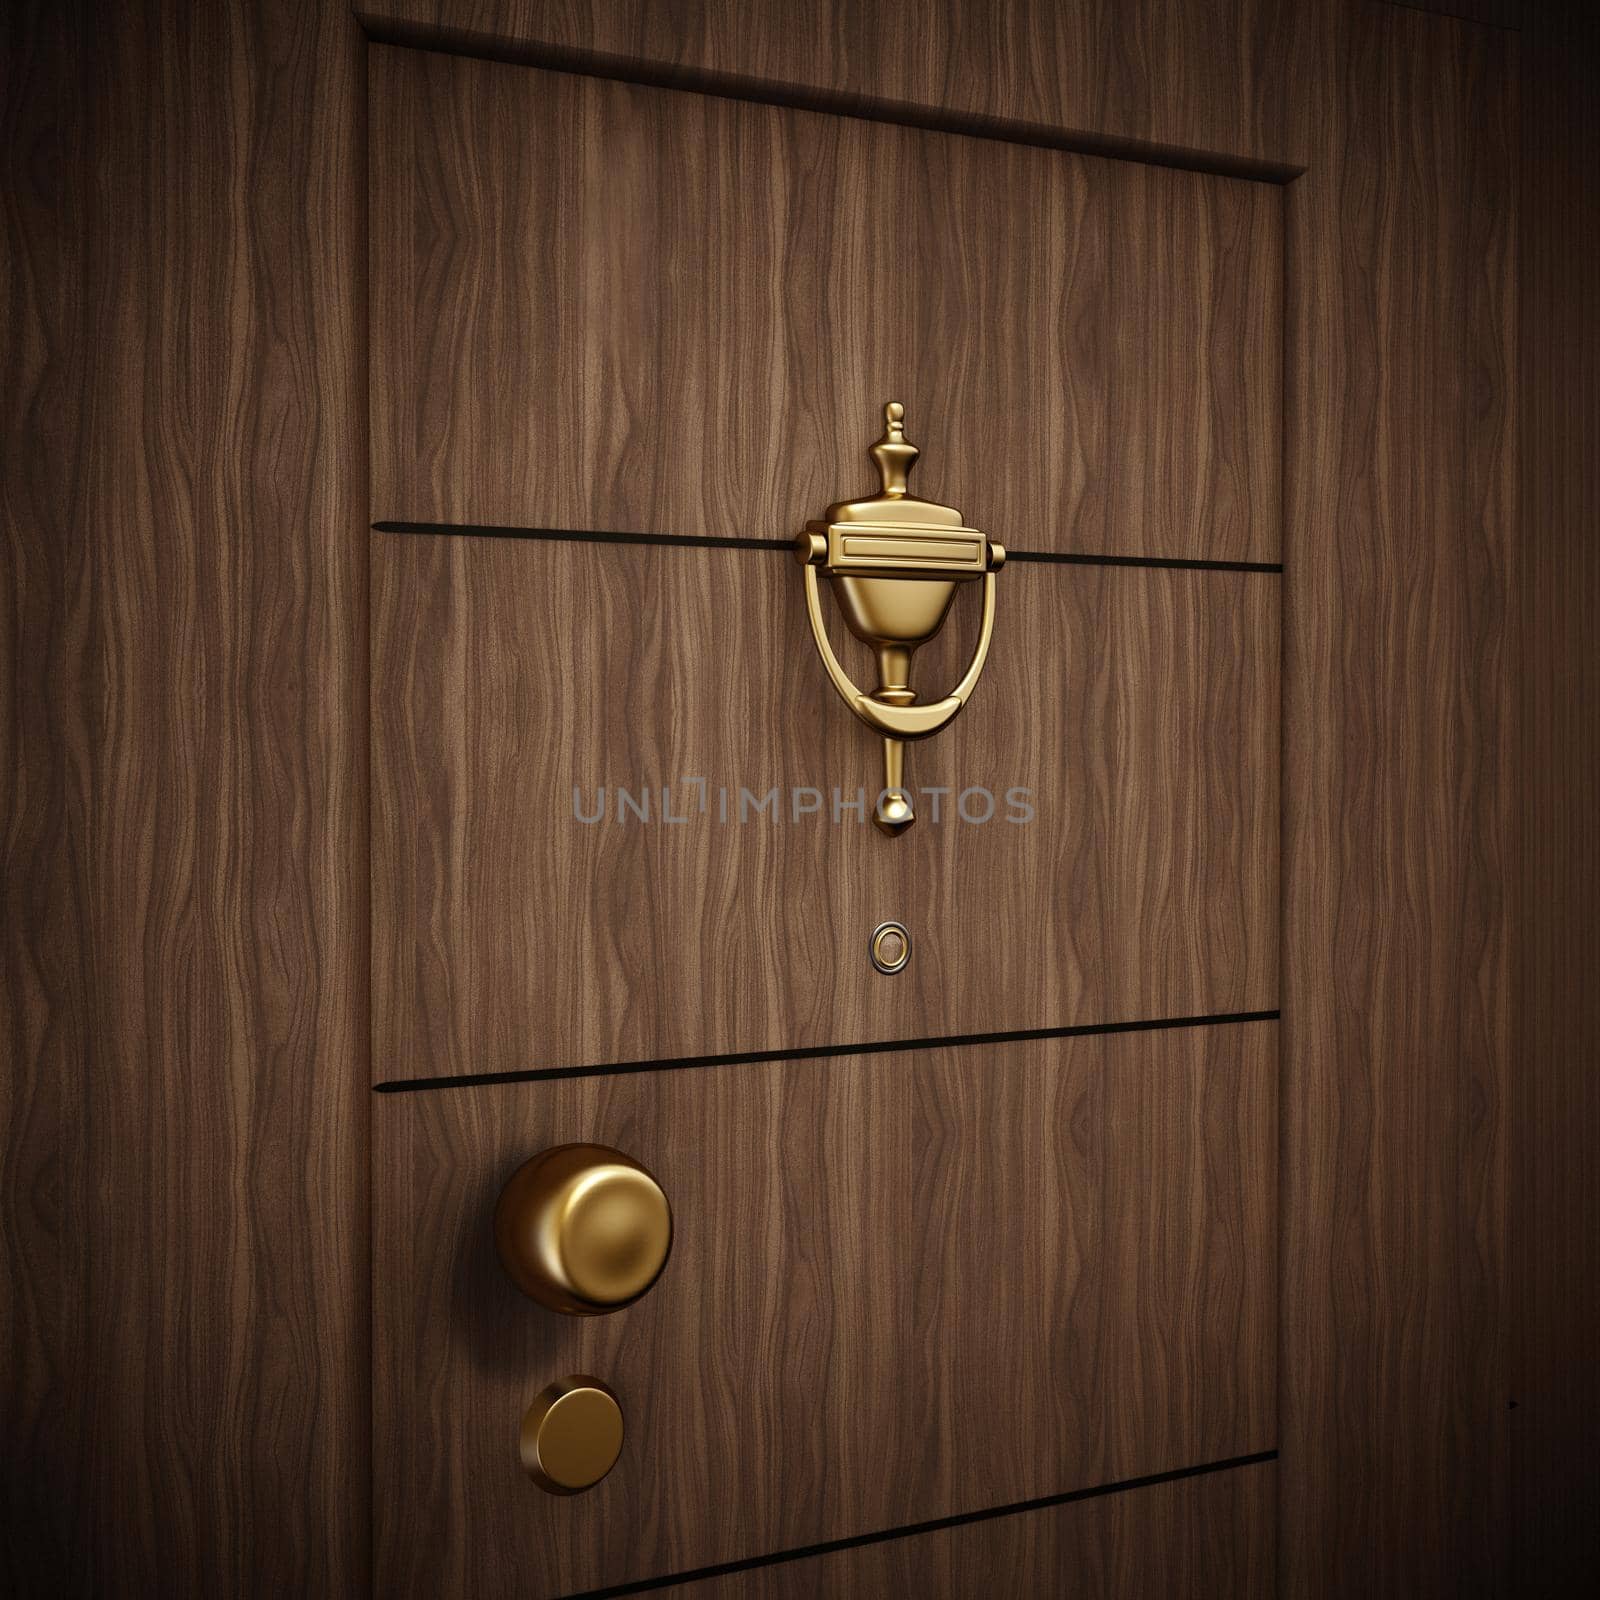 Golden door knocker on wooden door. 3D illustration.